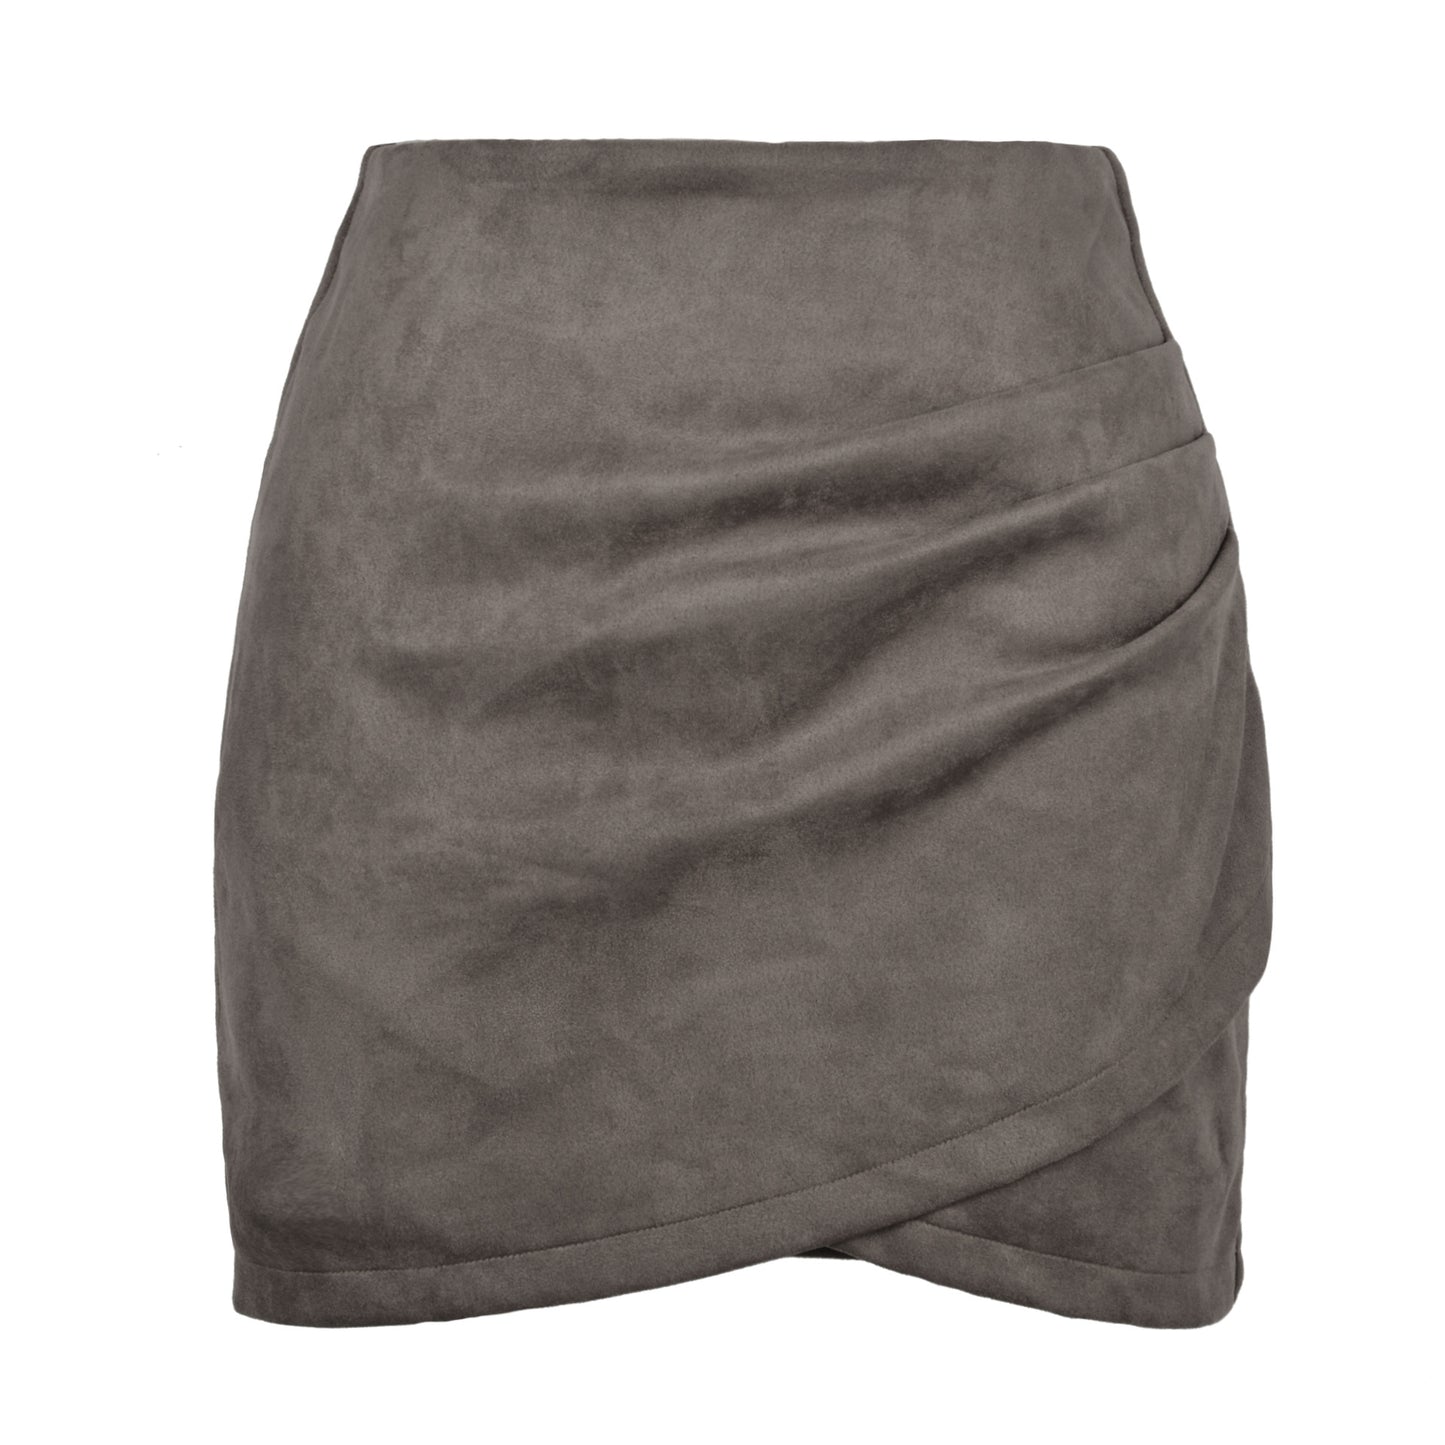 Suede Hip-hugging Skirt Pleated Irregular Zipper Skirt 1975